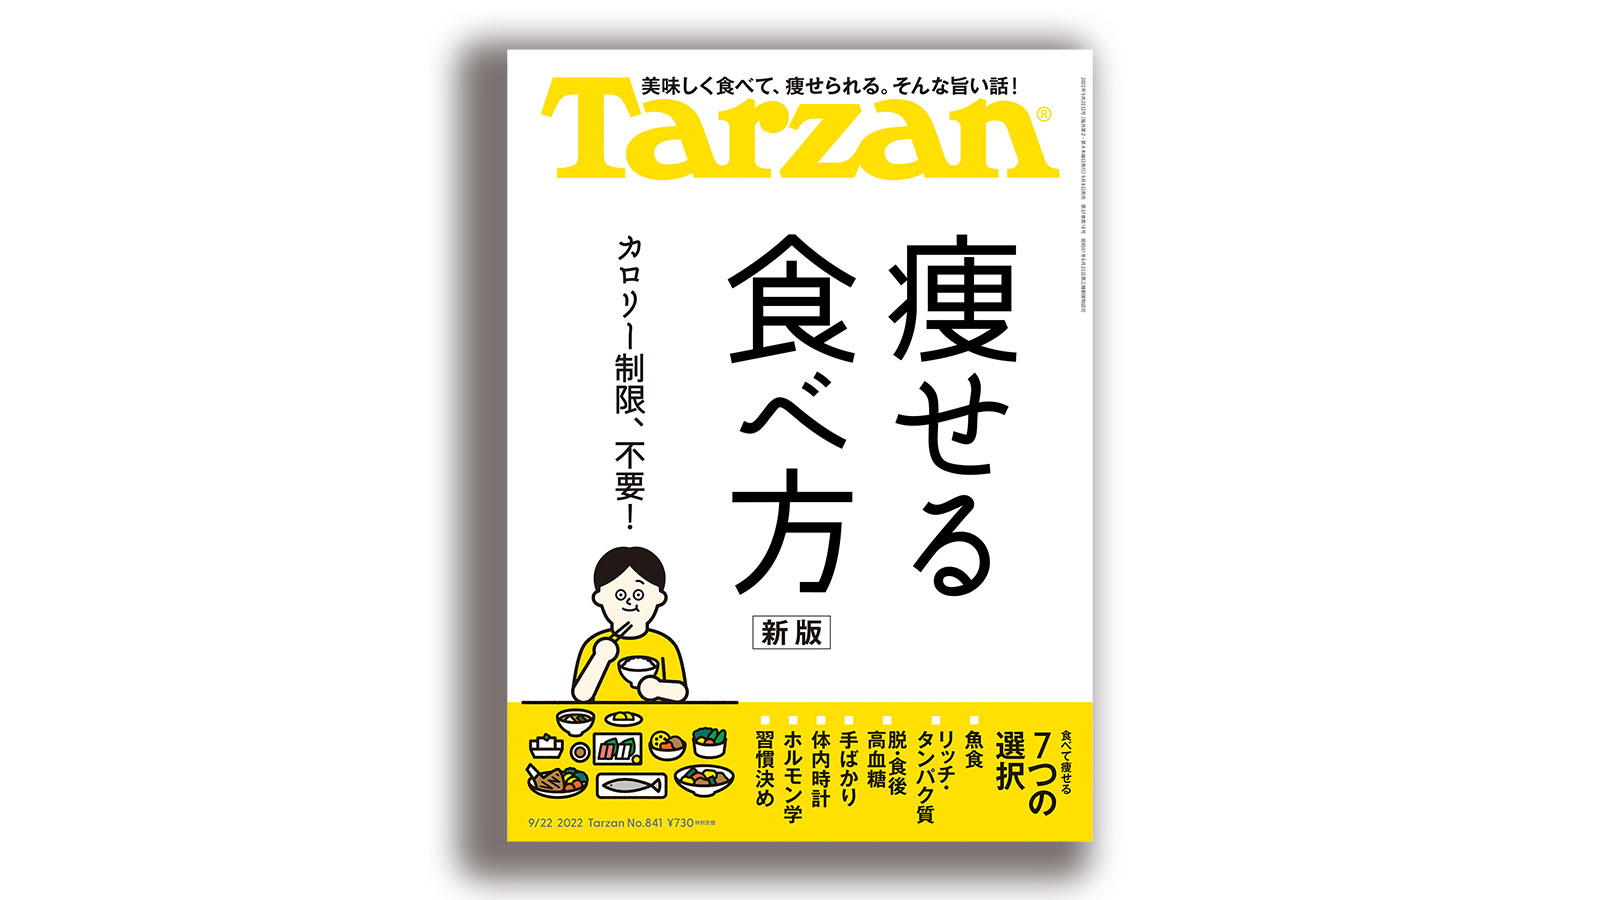 雑誌ターザン/Tarzan841号「痩せる食べ方」特集